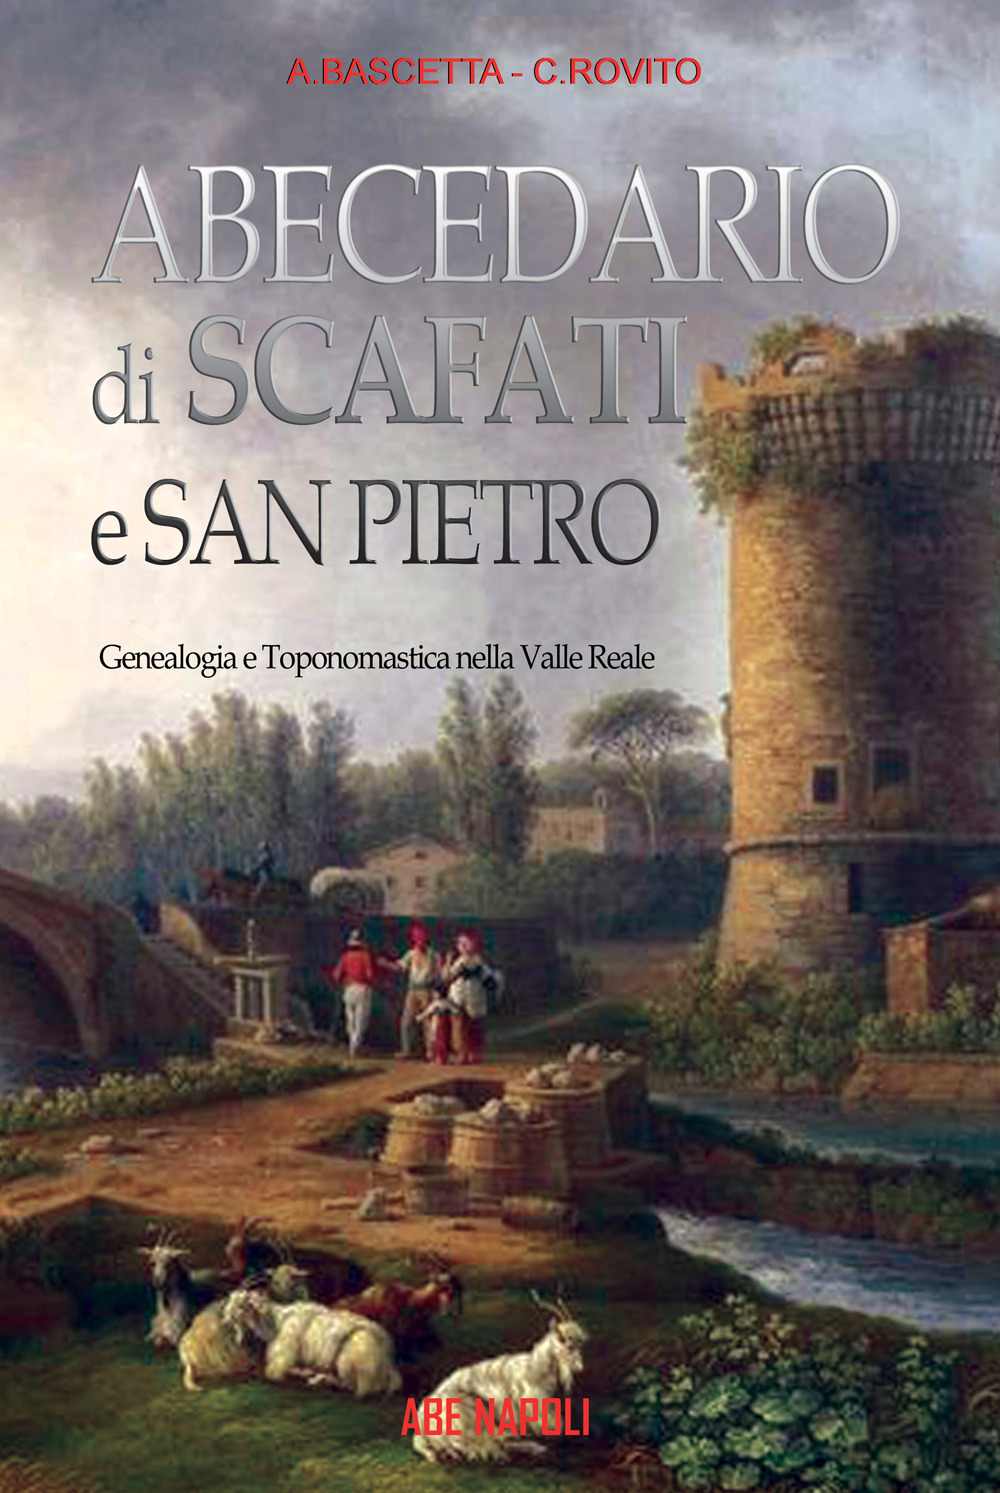 Abecedario diScafati e San Pietro: toponomastica e genealogia nella Valle Reale di Pompei e del Sarno